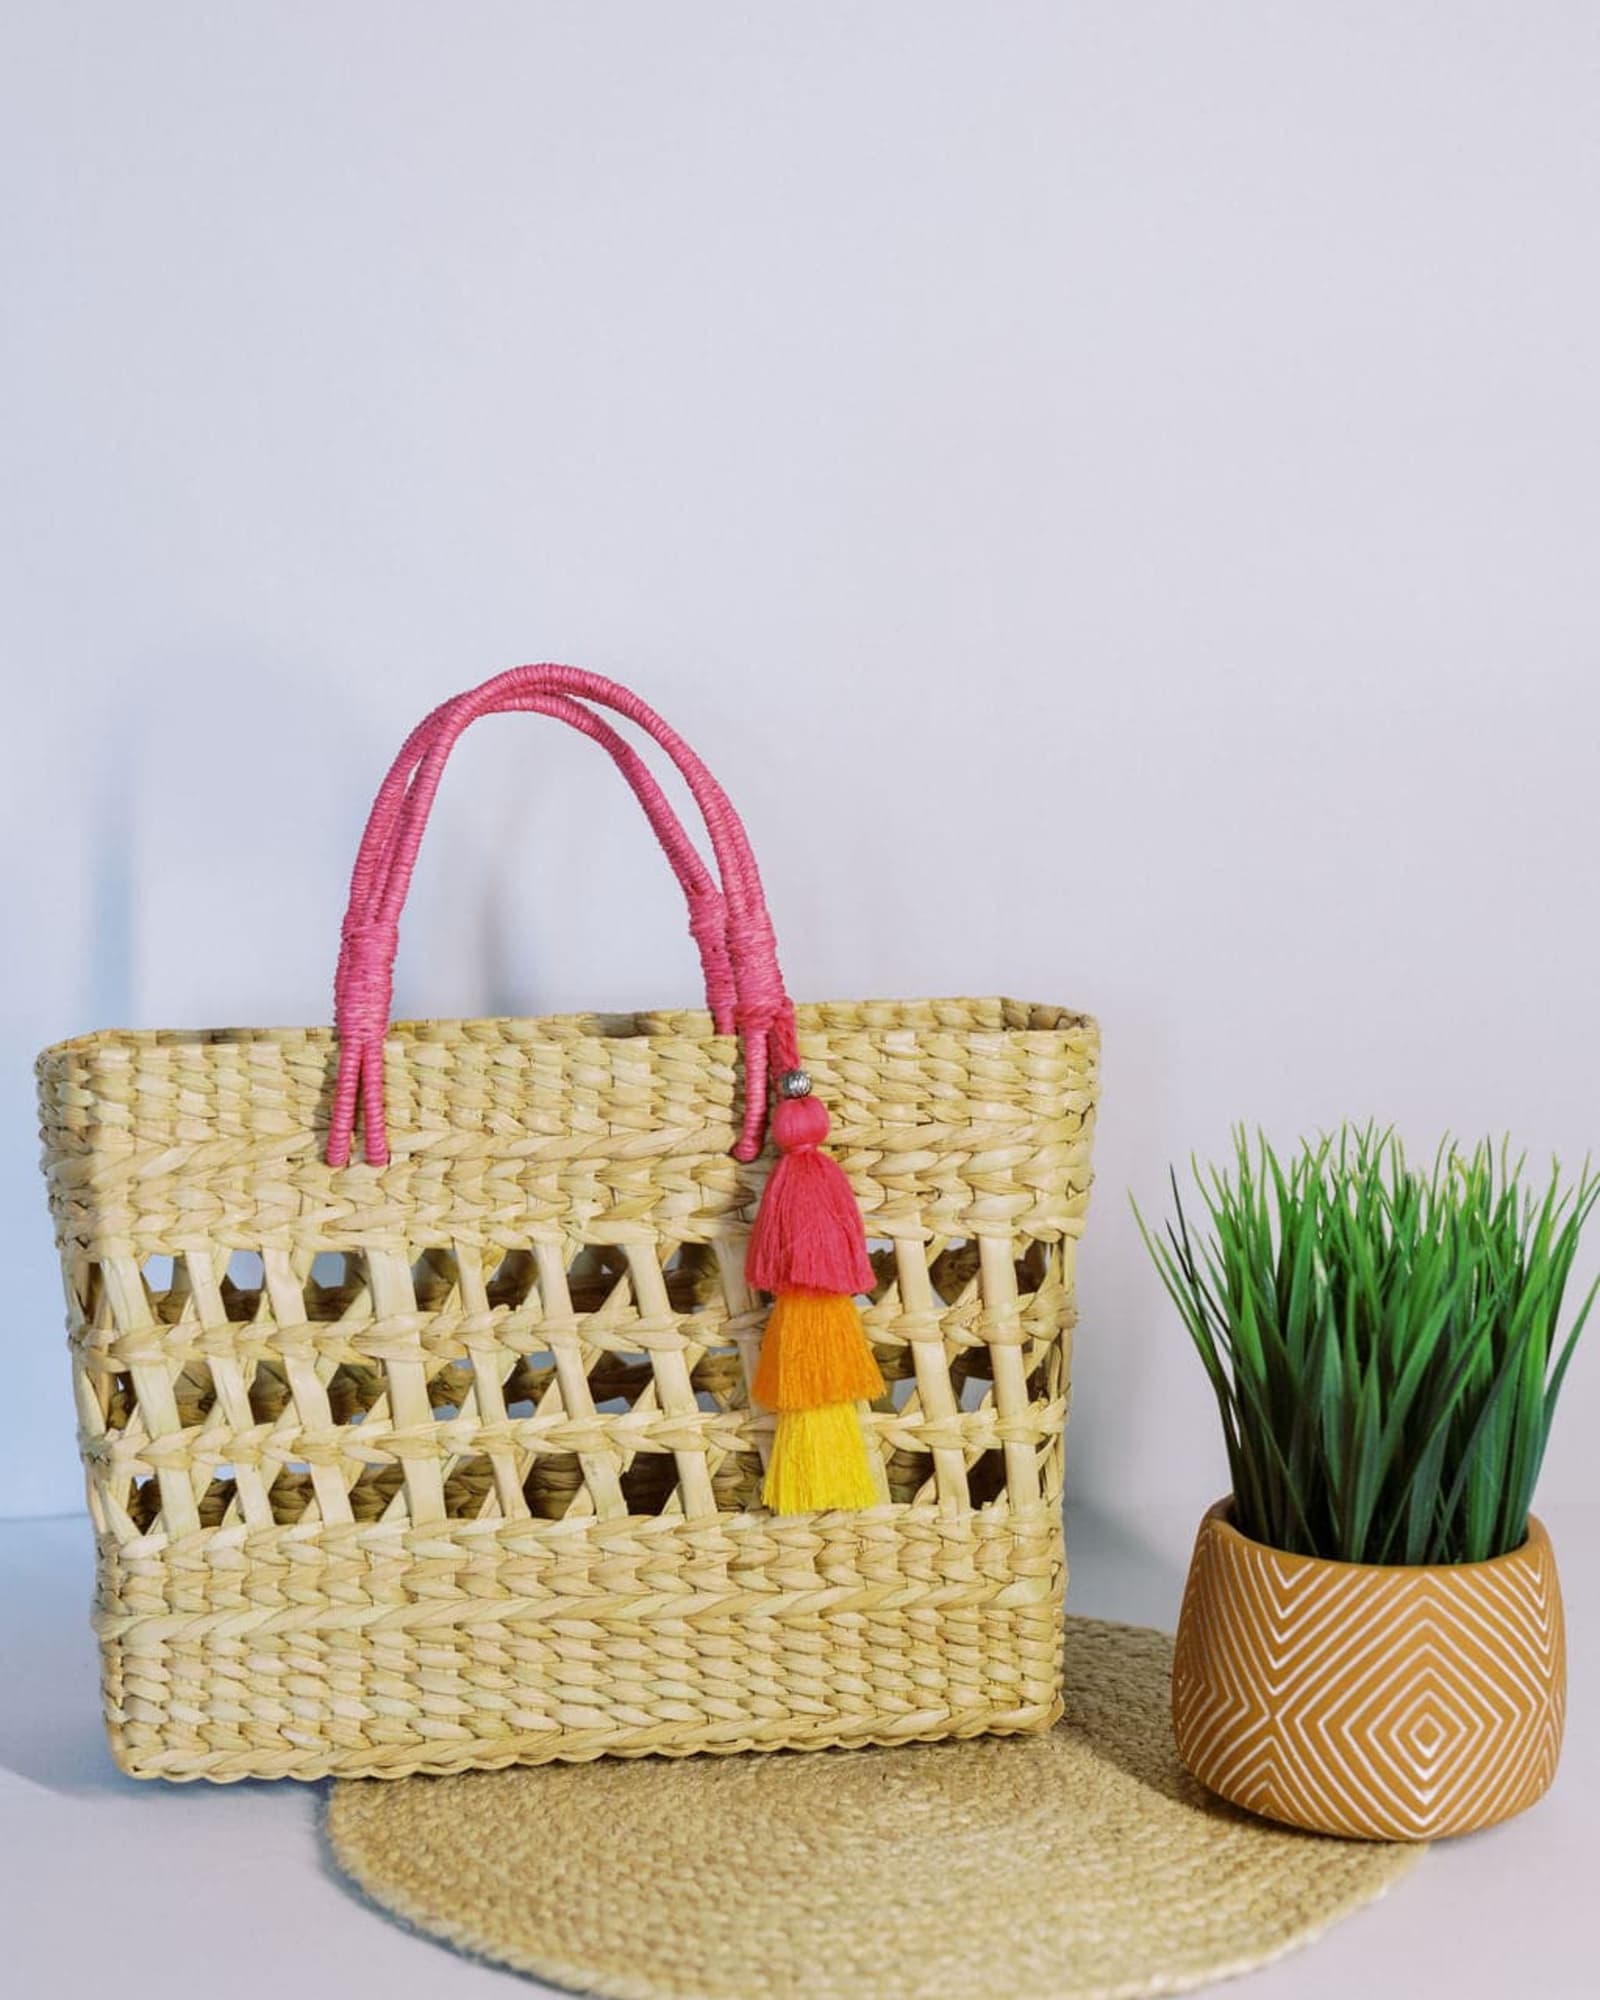 Shiraleah Daisy - Tote Bag - Natural Floral Print Bag - Woven Bag